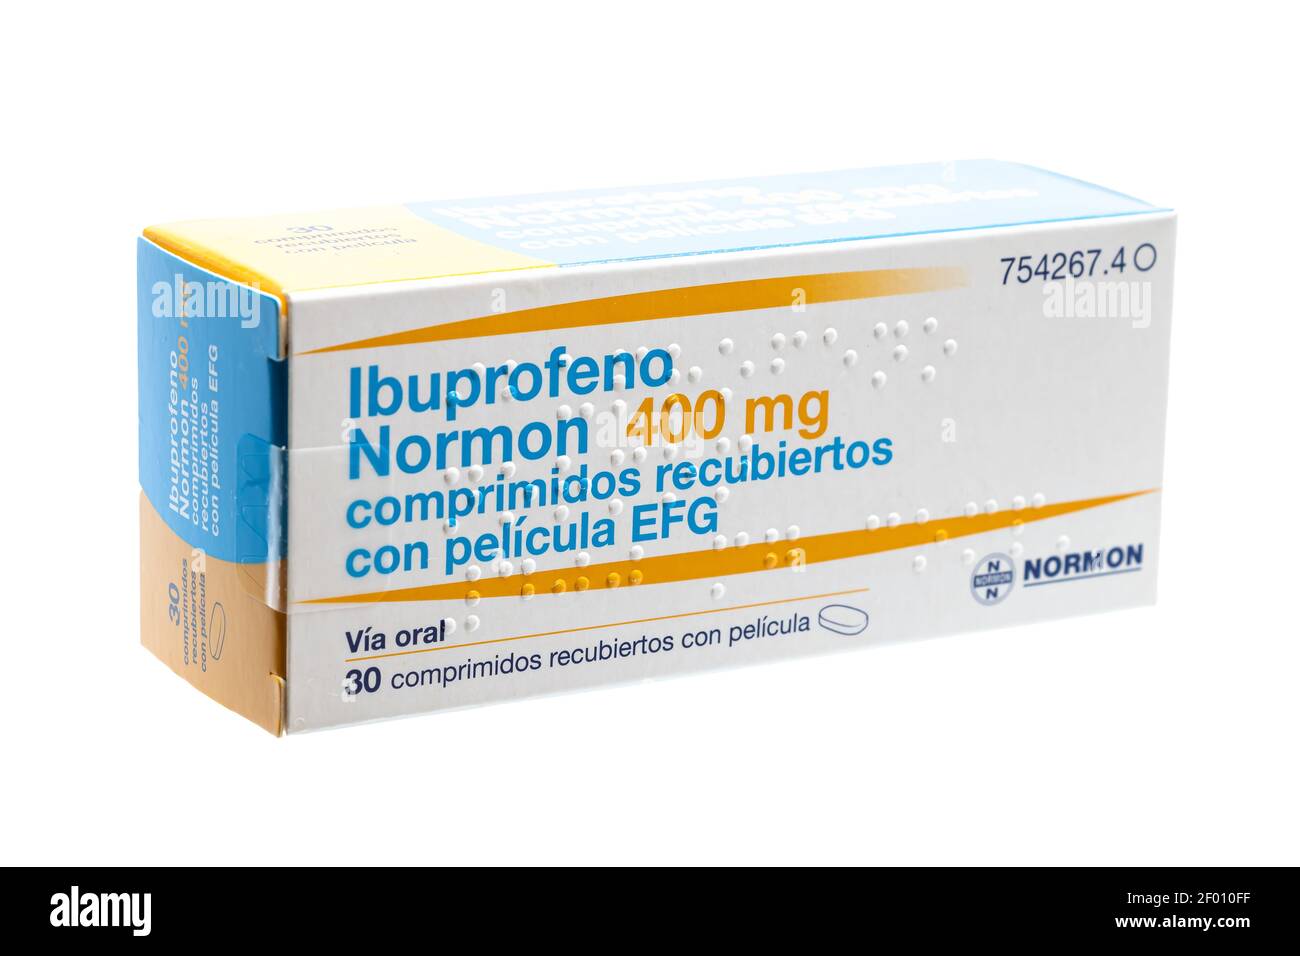 Huelva, Espagne - 6 mars 2021: Boîte espagnole d'ibuprofène, est un médicament anti-inflammatoire. Utilisé pour la douleur, la fièvre, et l'inflammation, douloureux menst Banque D'Images